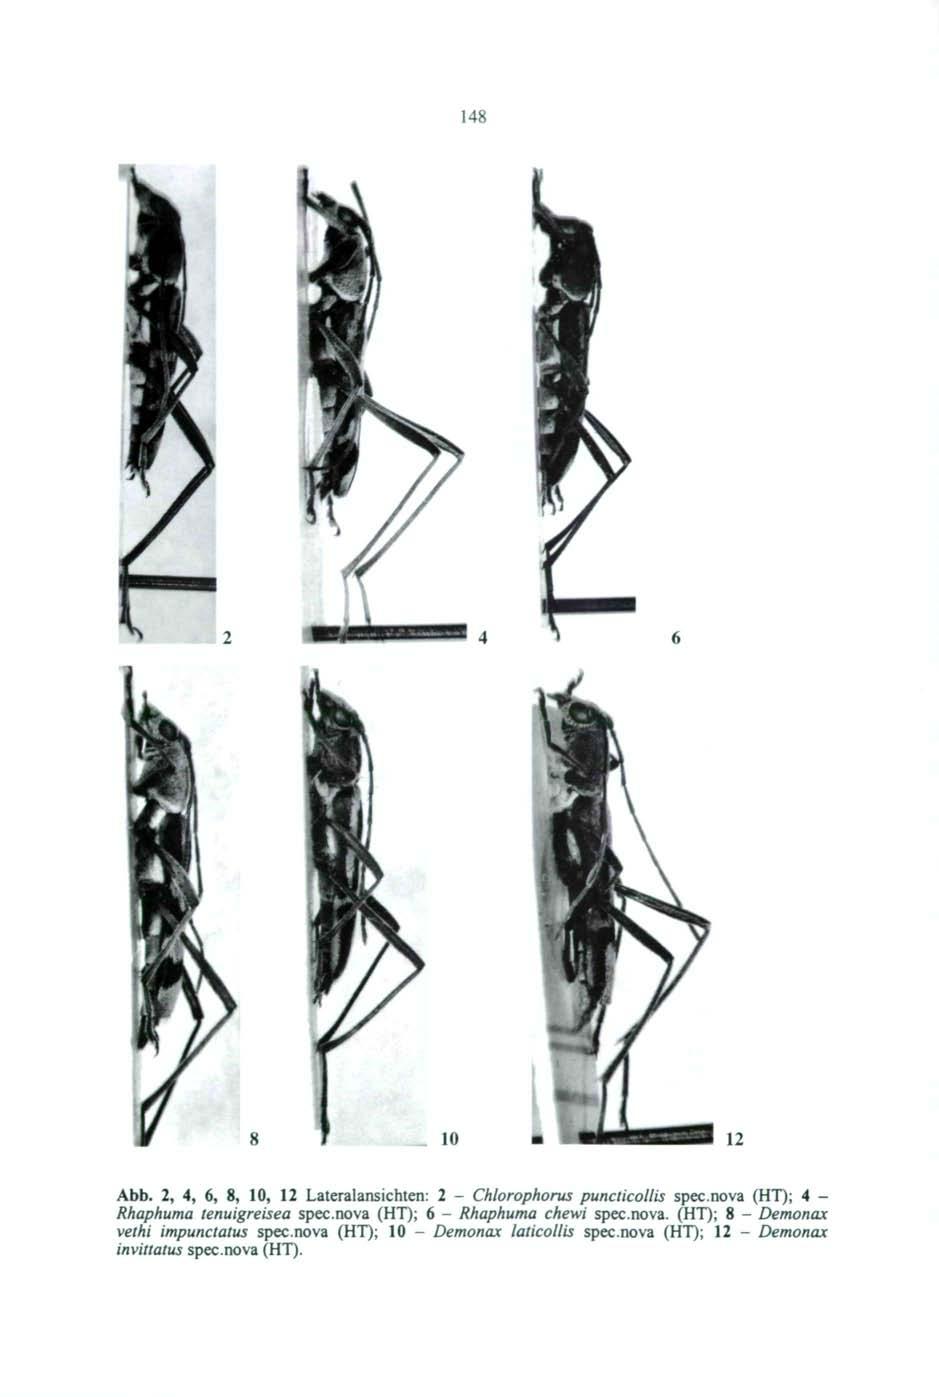 148-10 12 Abb. 2, 4, 6, 8, 10, 12 Lateralansichten: 2 - Chlorophorus puncticollis spec.nova (HT); 4 - Rhaphuma tenuigreisea spec.